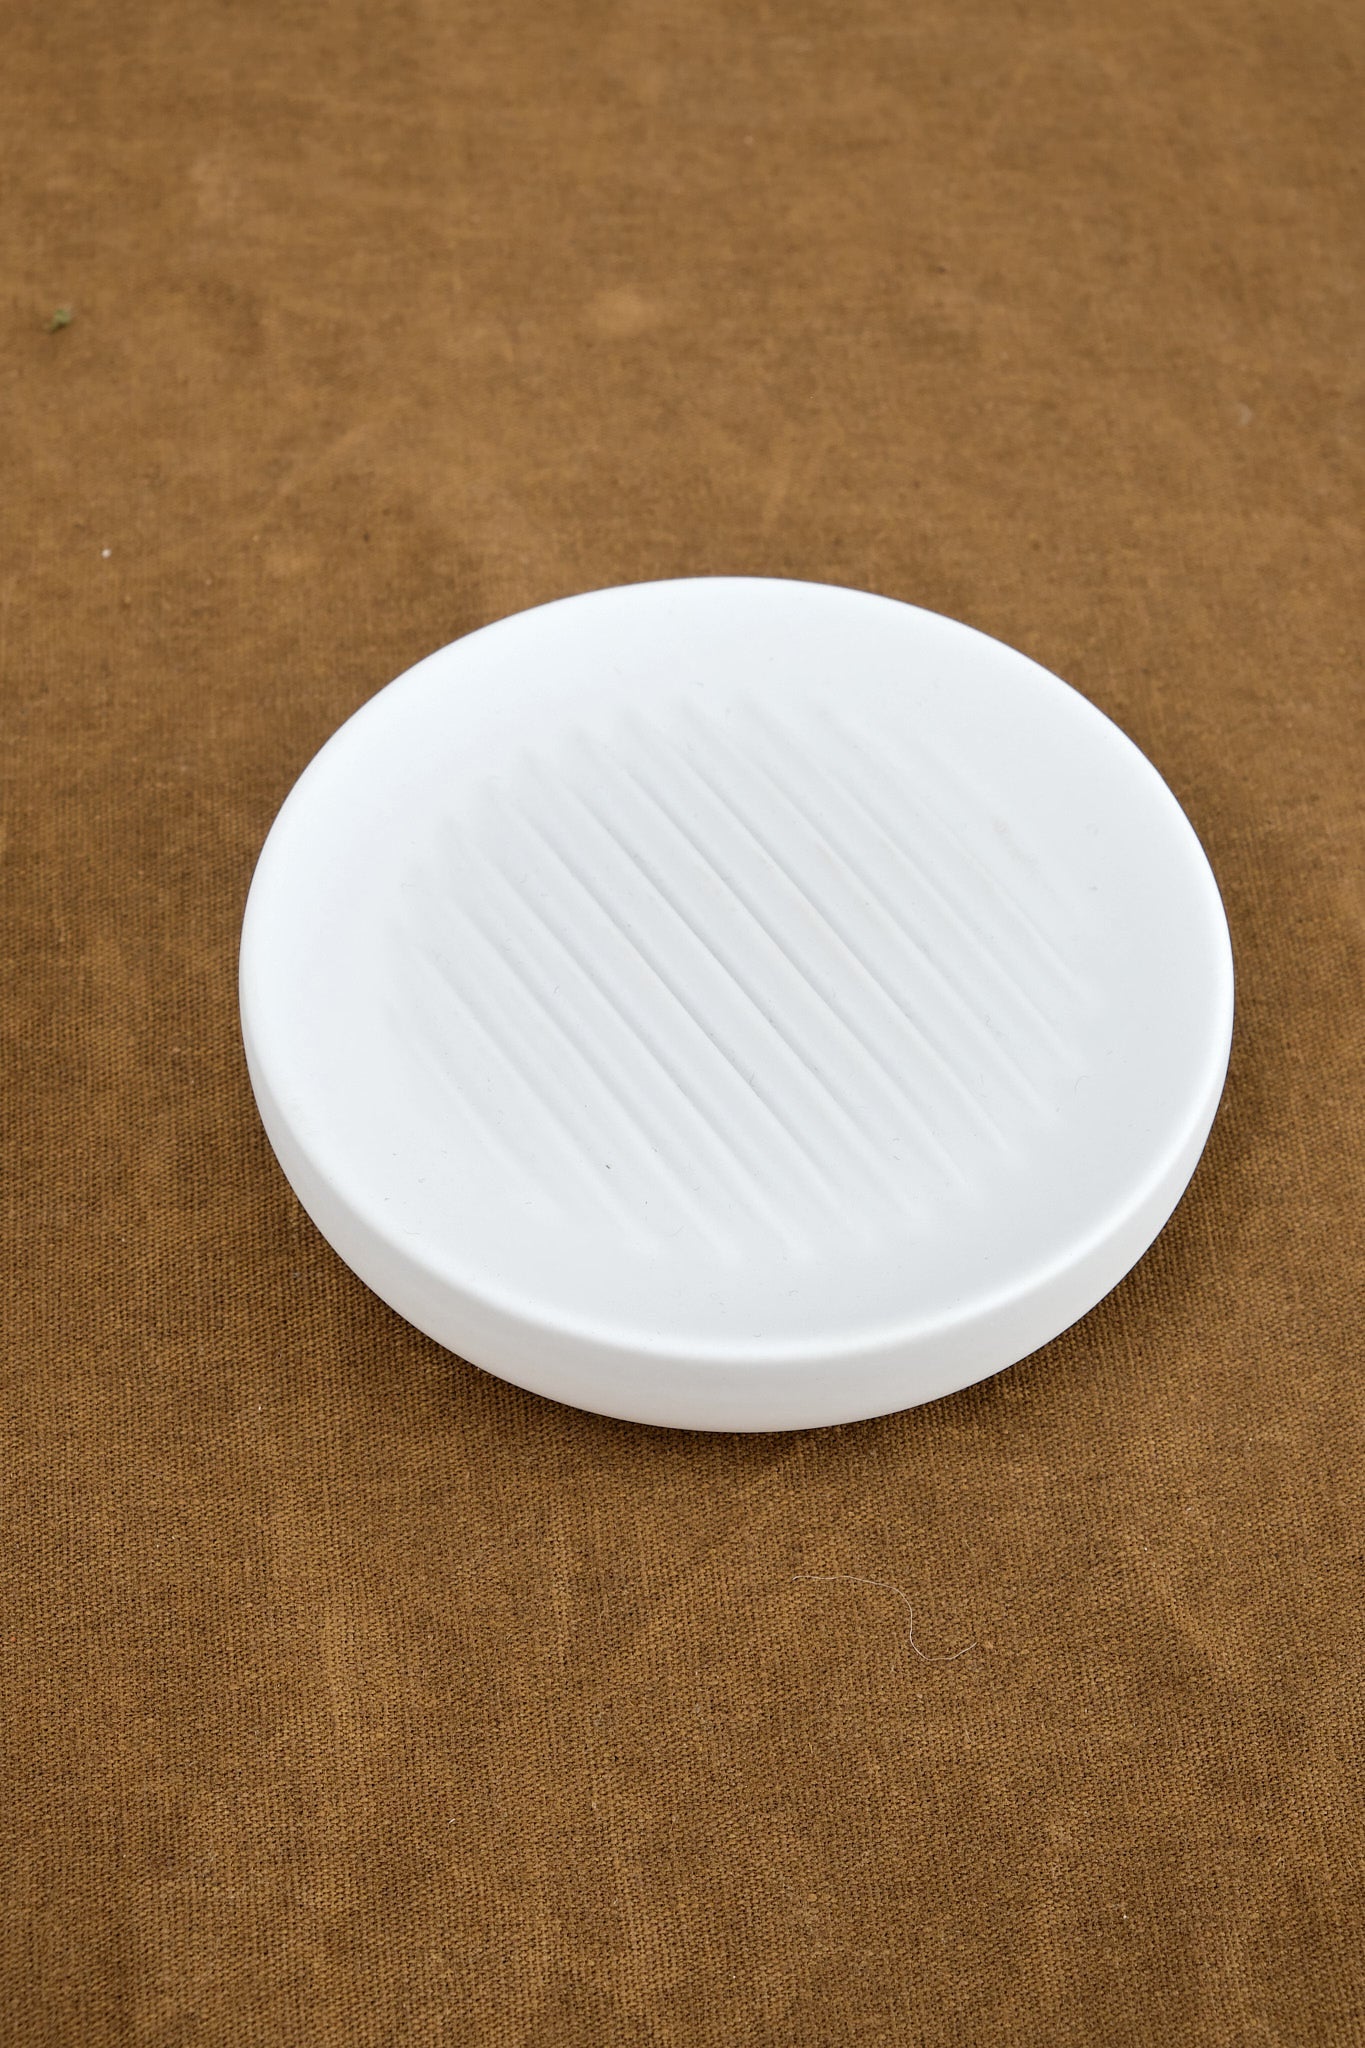 Zone Denmark UME Soap Dish in white